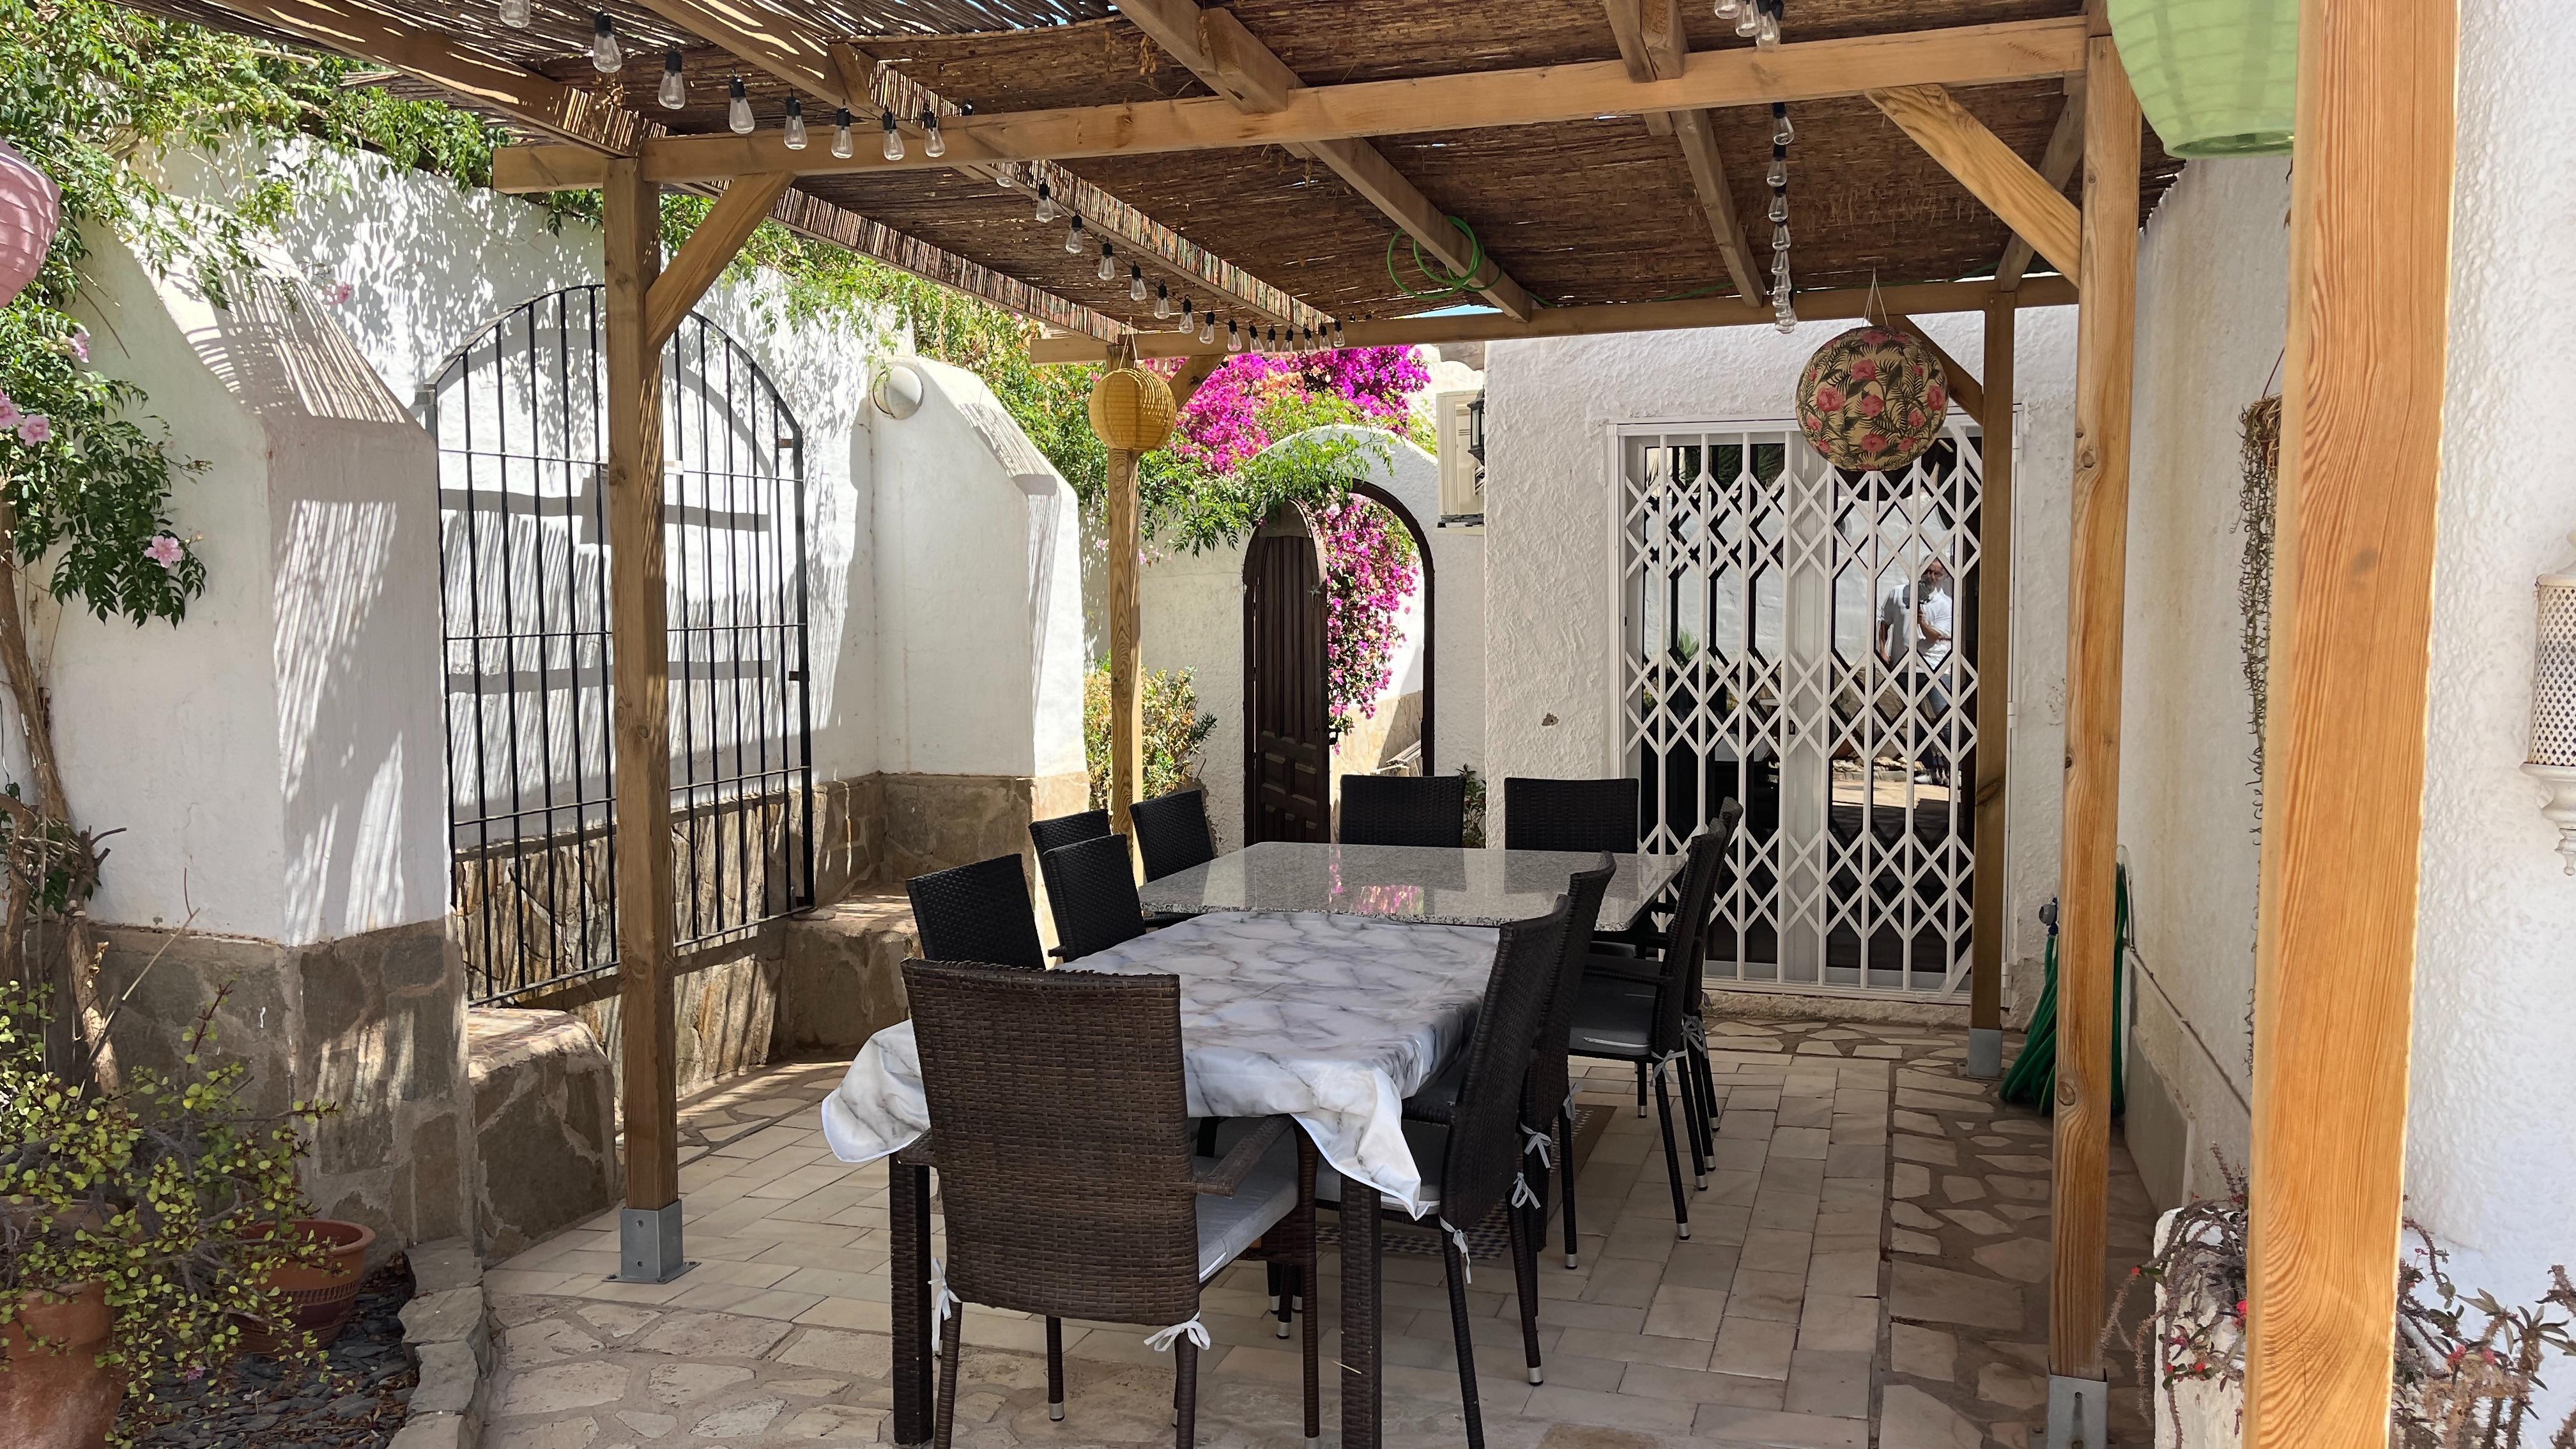 Casa ideal para compartir en familia: Villa en alquiler en Mojácar, Almería